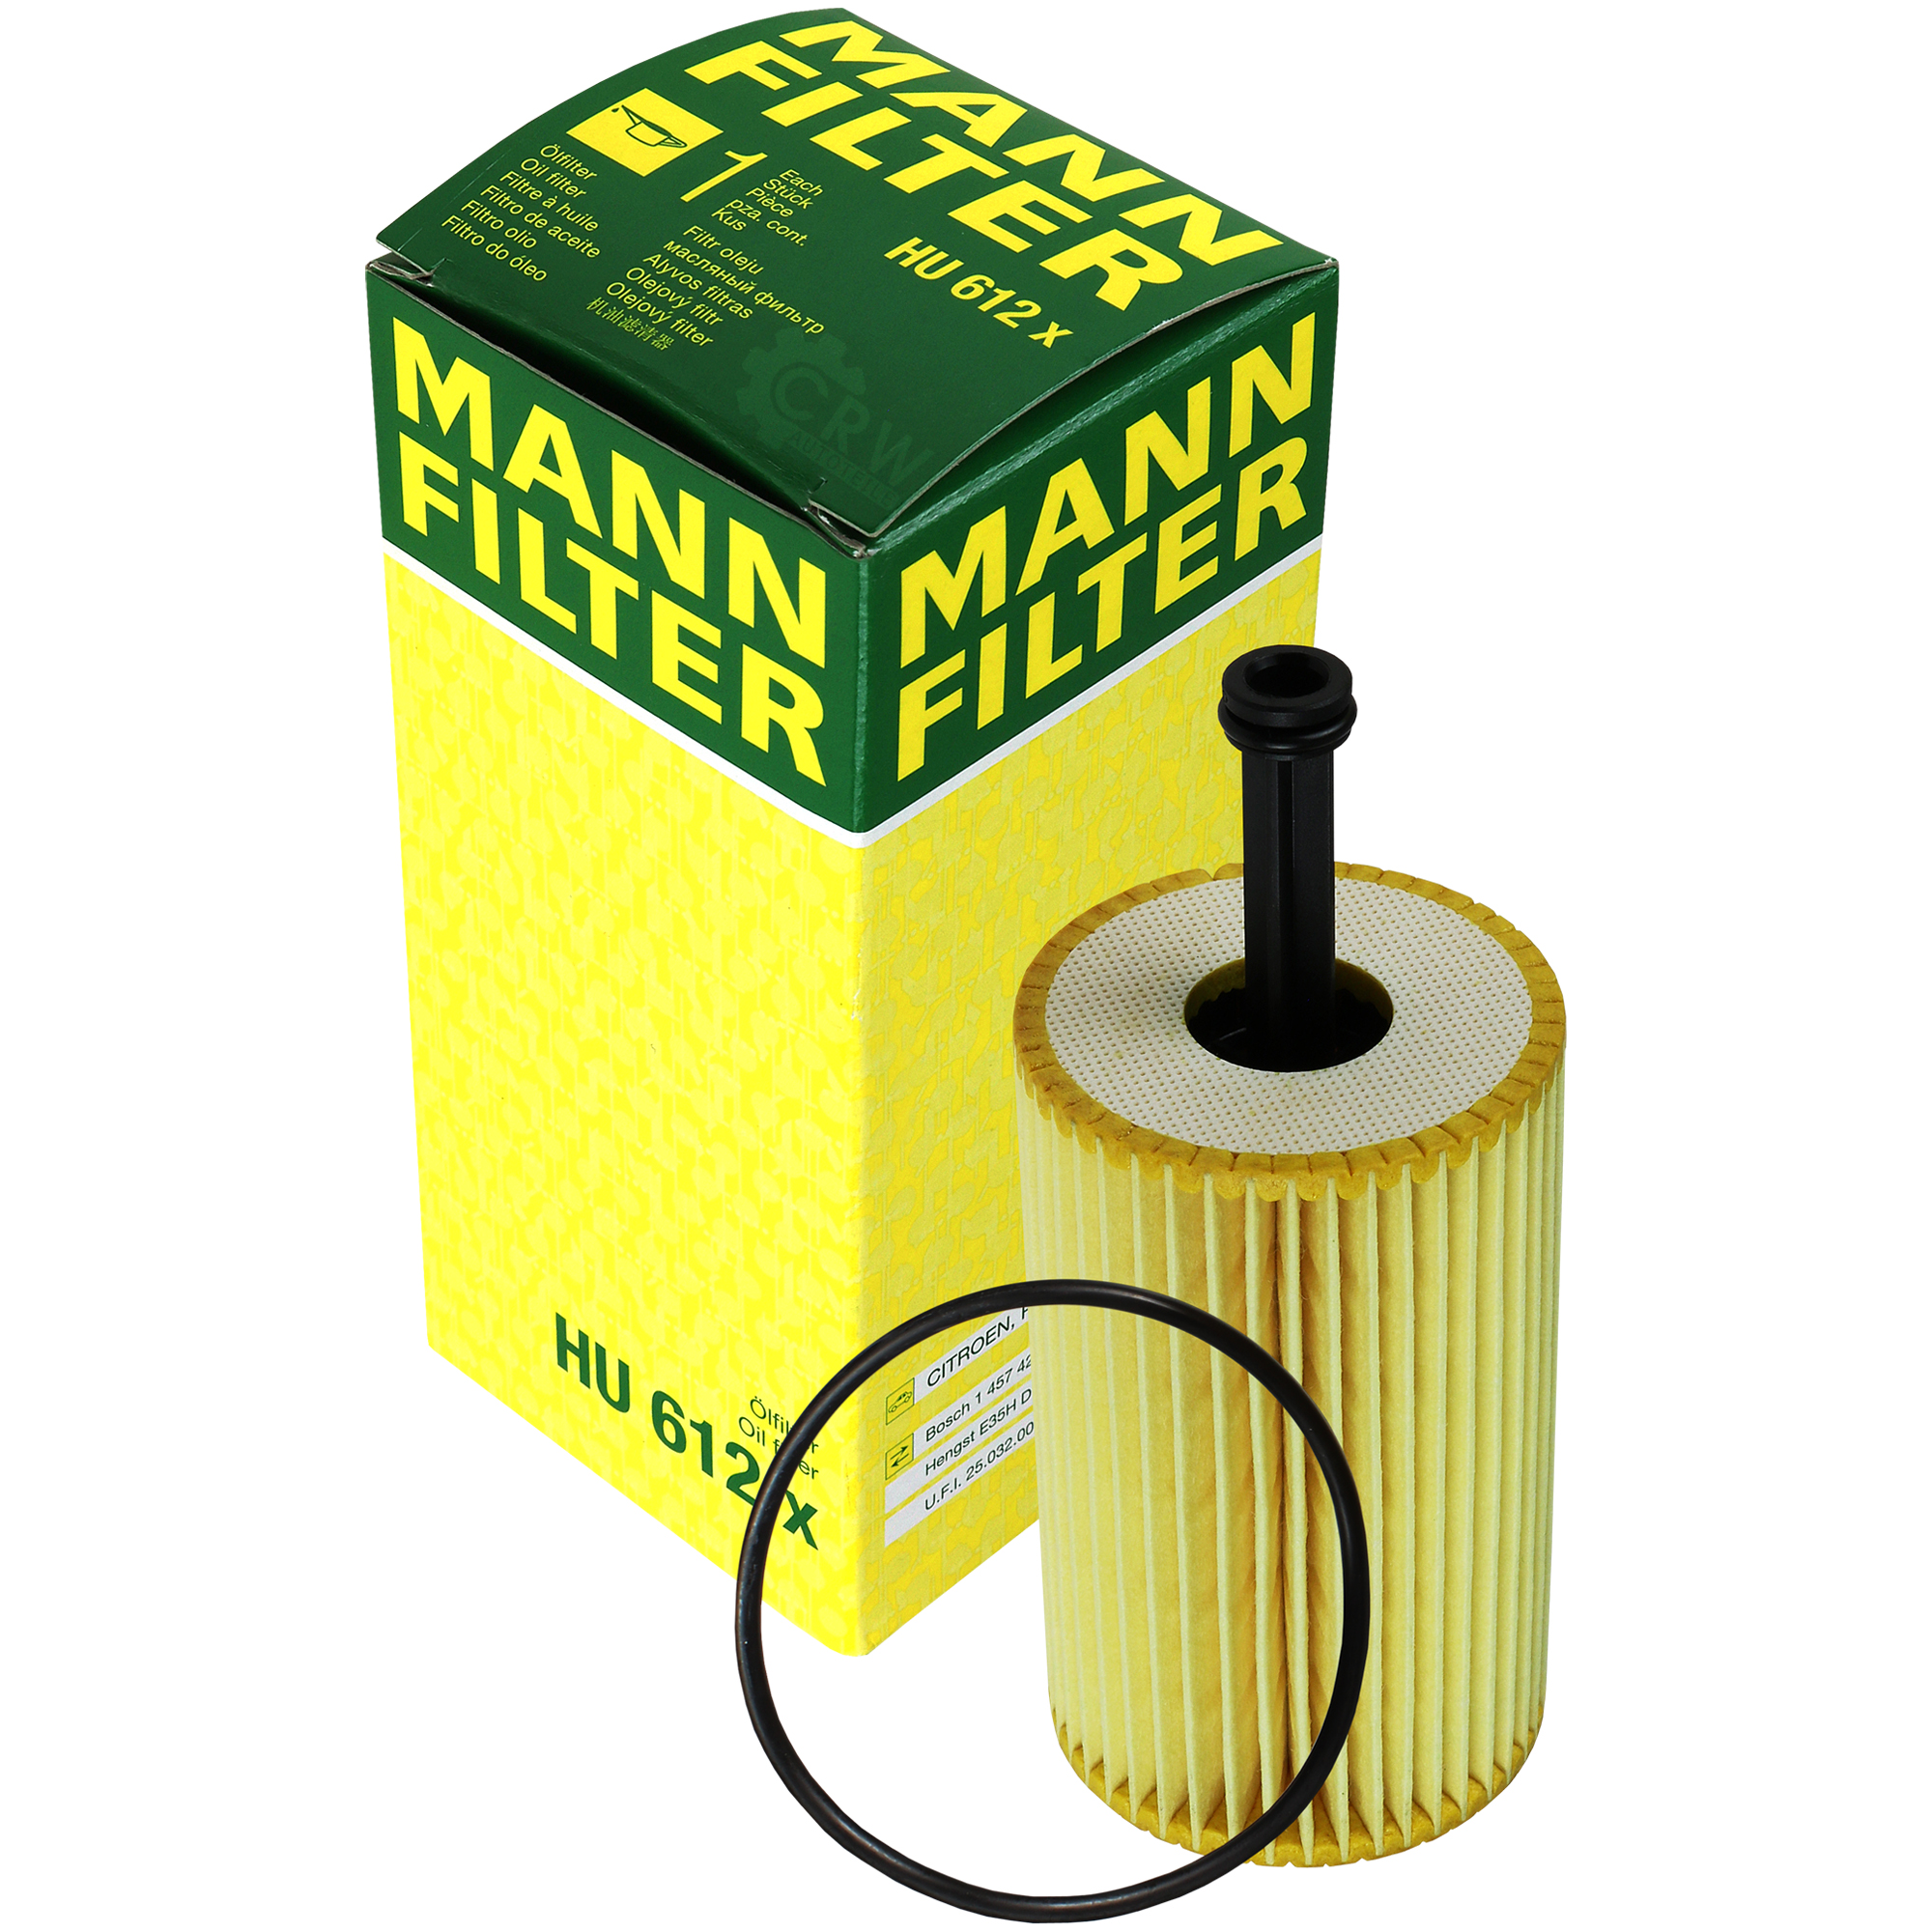 MANN-FILTER Ölfilter HU 612 x Oil Filter